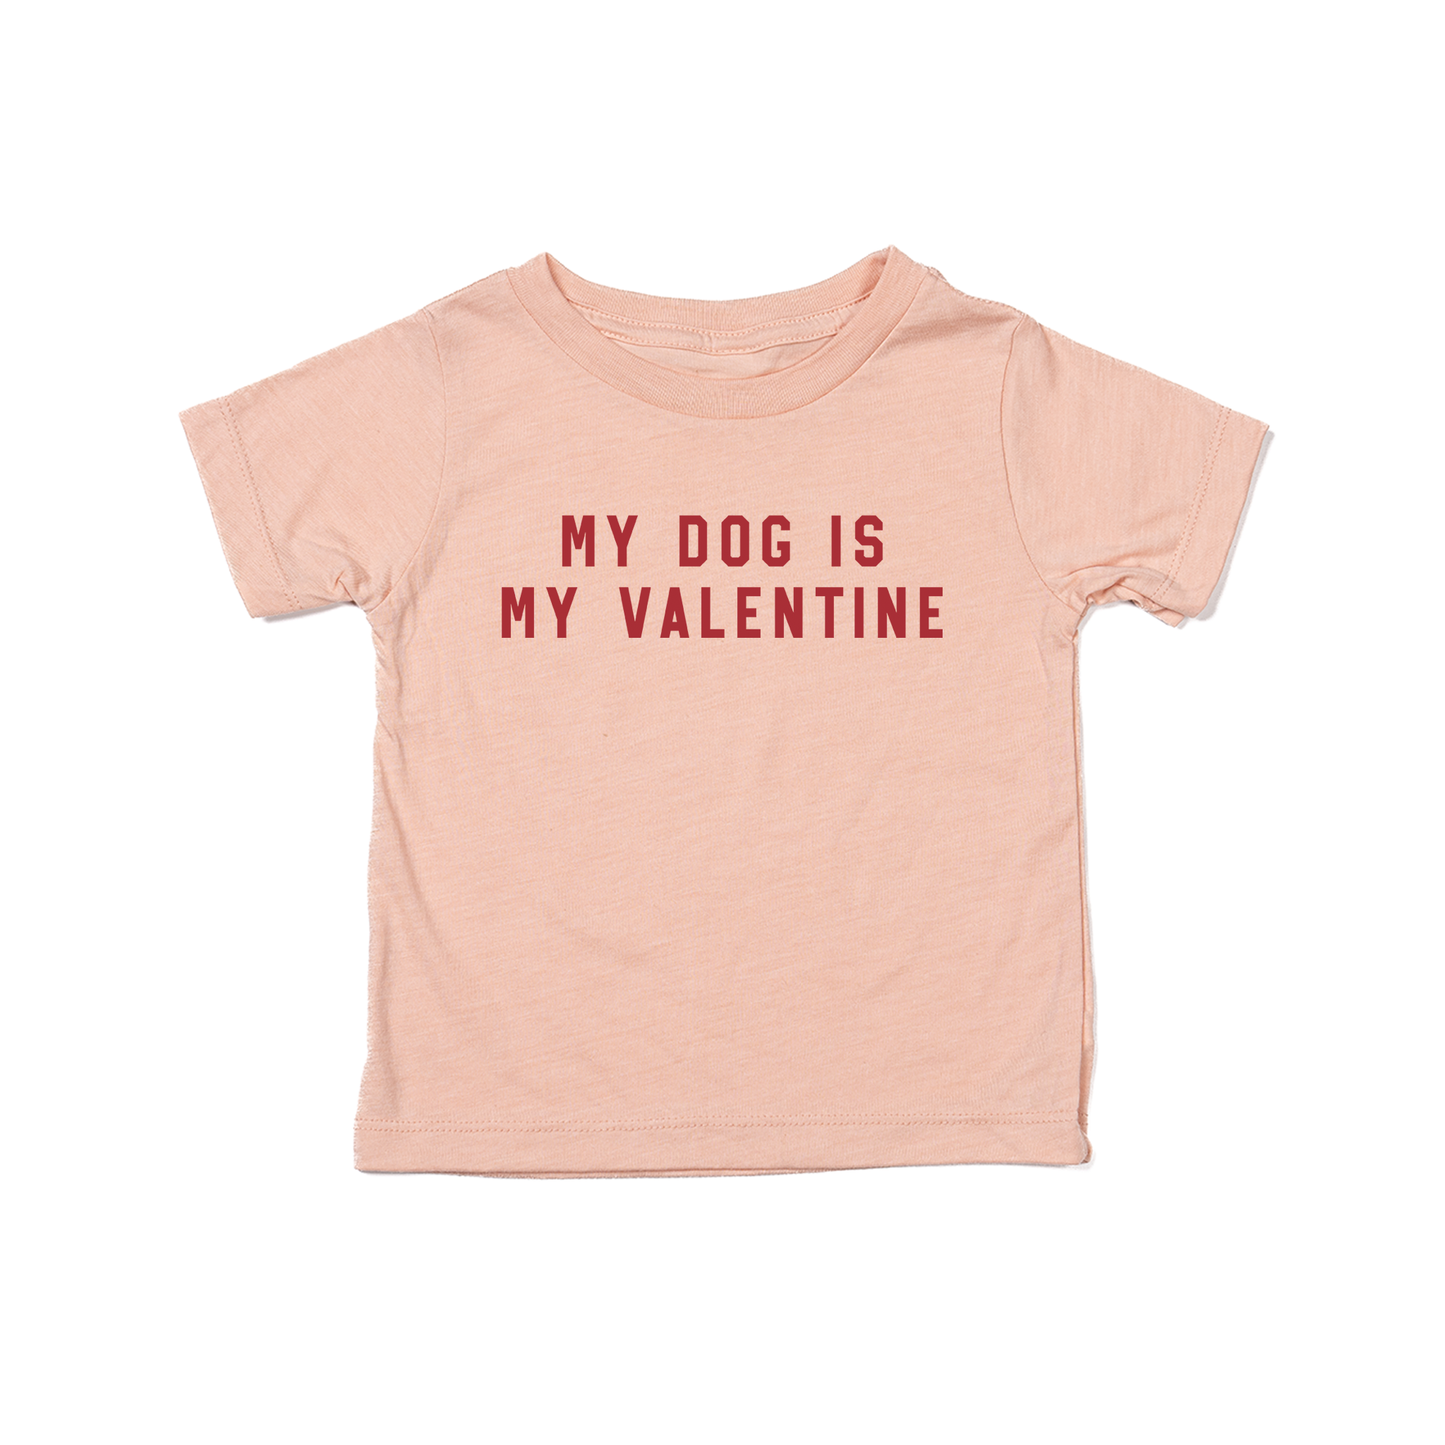 My Dog Is My Valentine (Red) - Kids Tee (Peach)